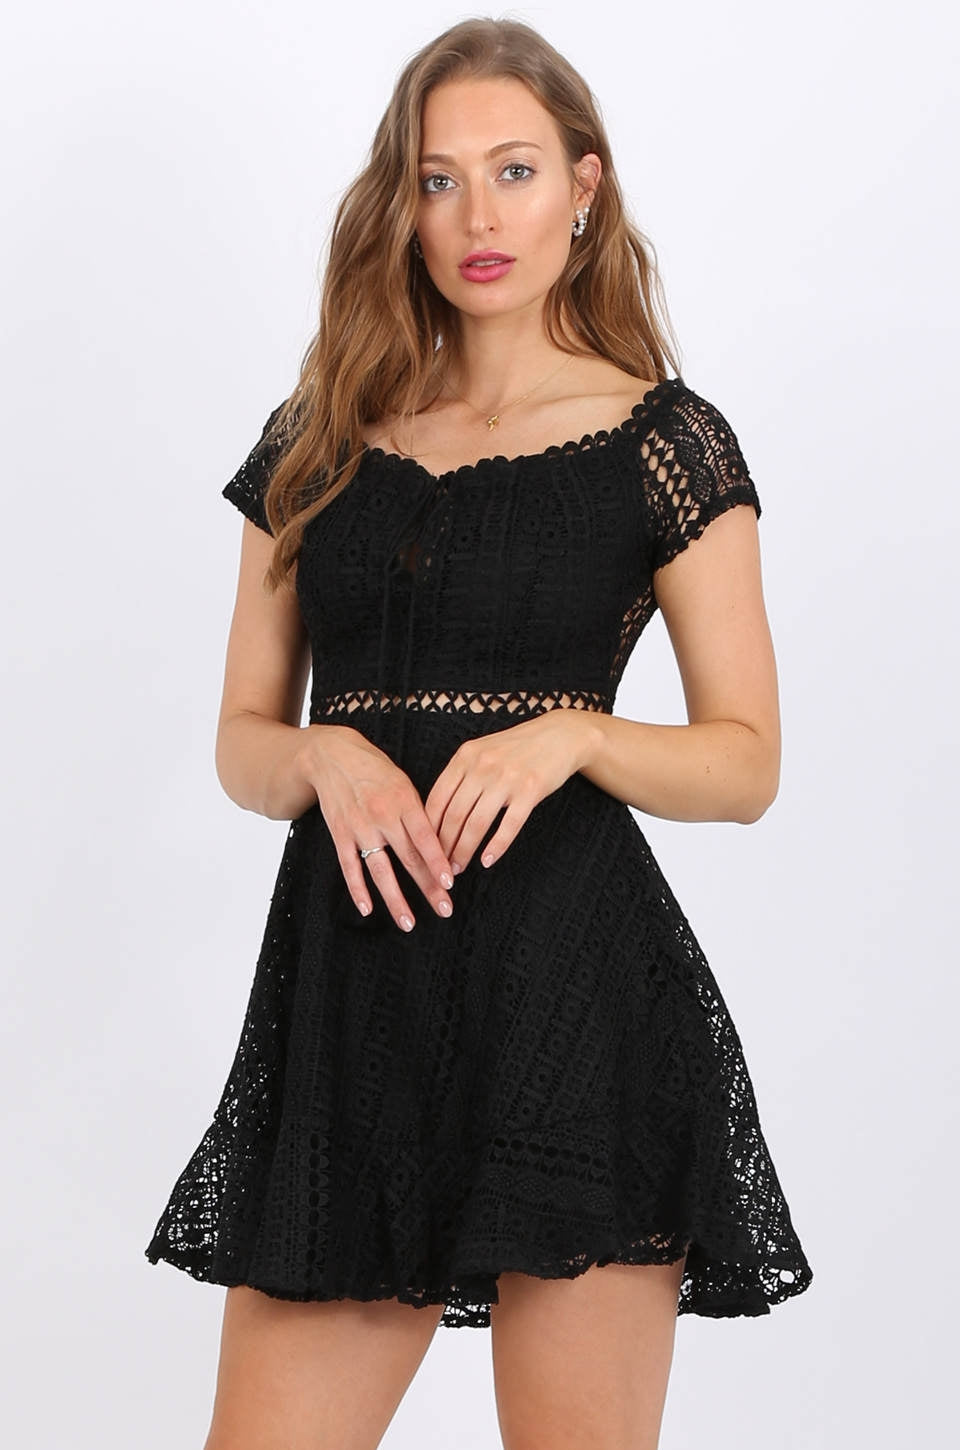 MISS PINKI Naomi Lace Dress in black